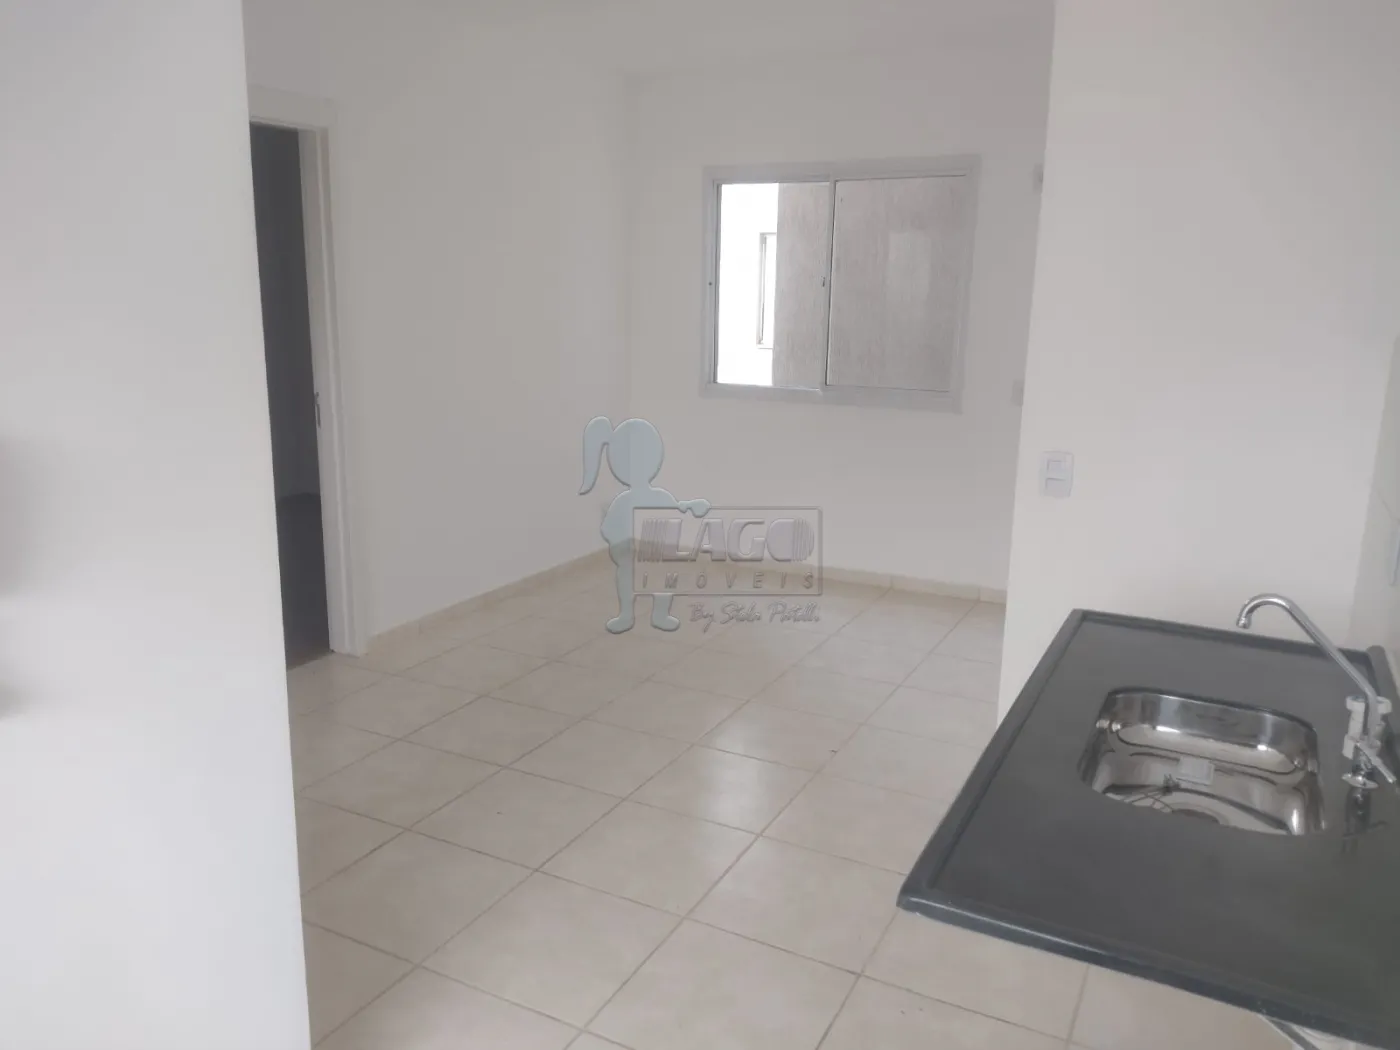 Comprar Apartamentos / Padrão em Ribeirão Preto R$ 133.000,00 - Foto 3